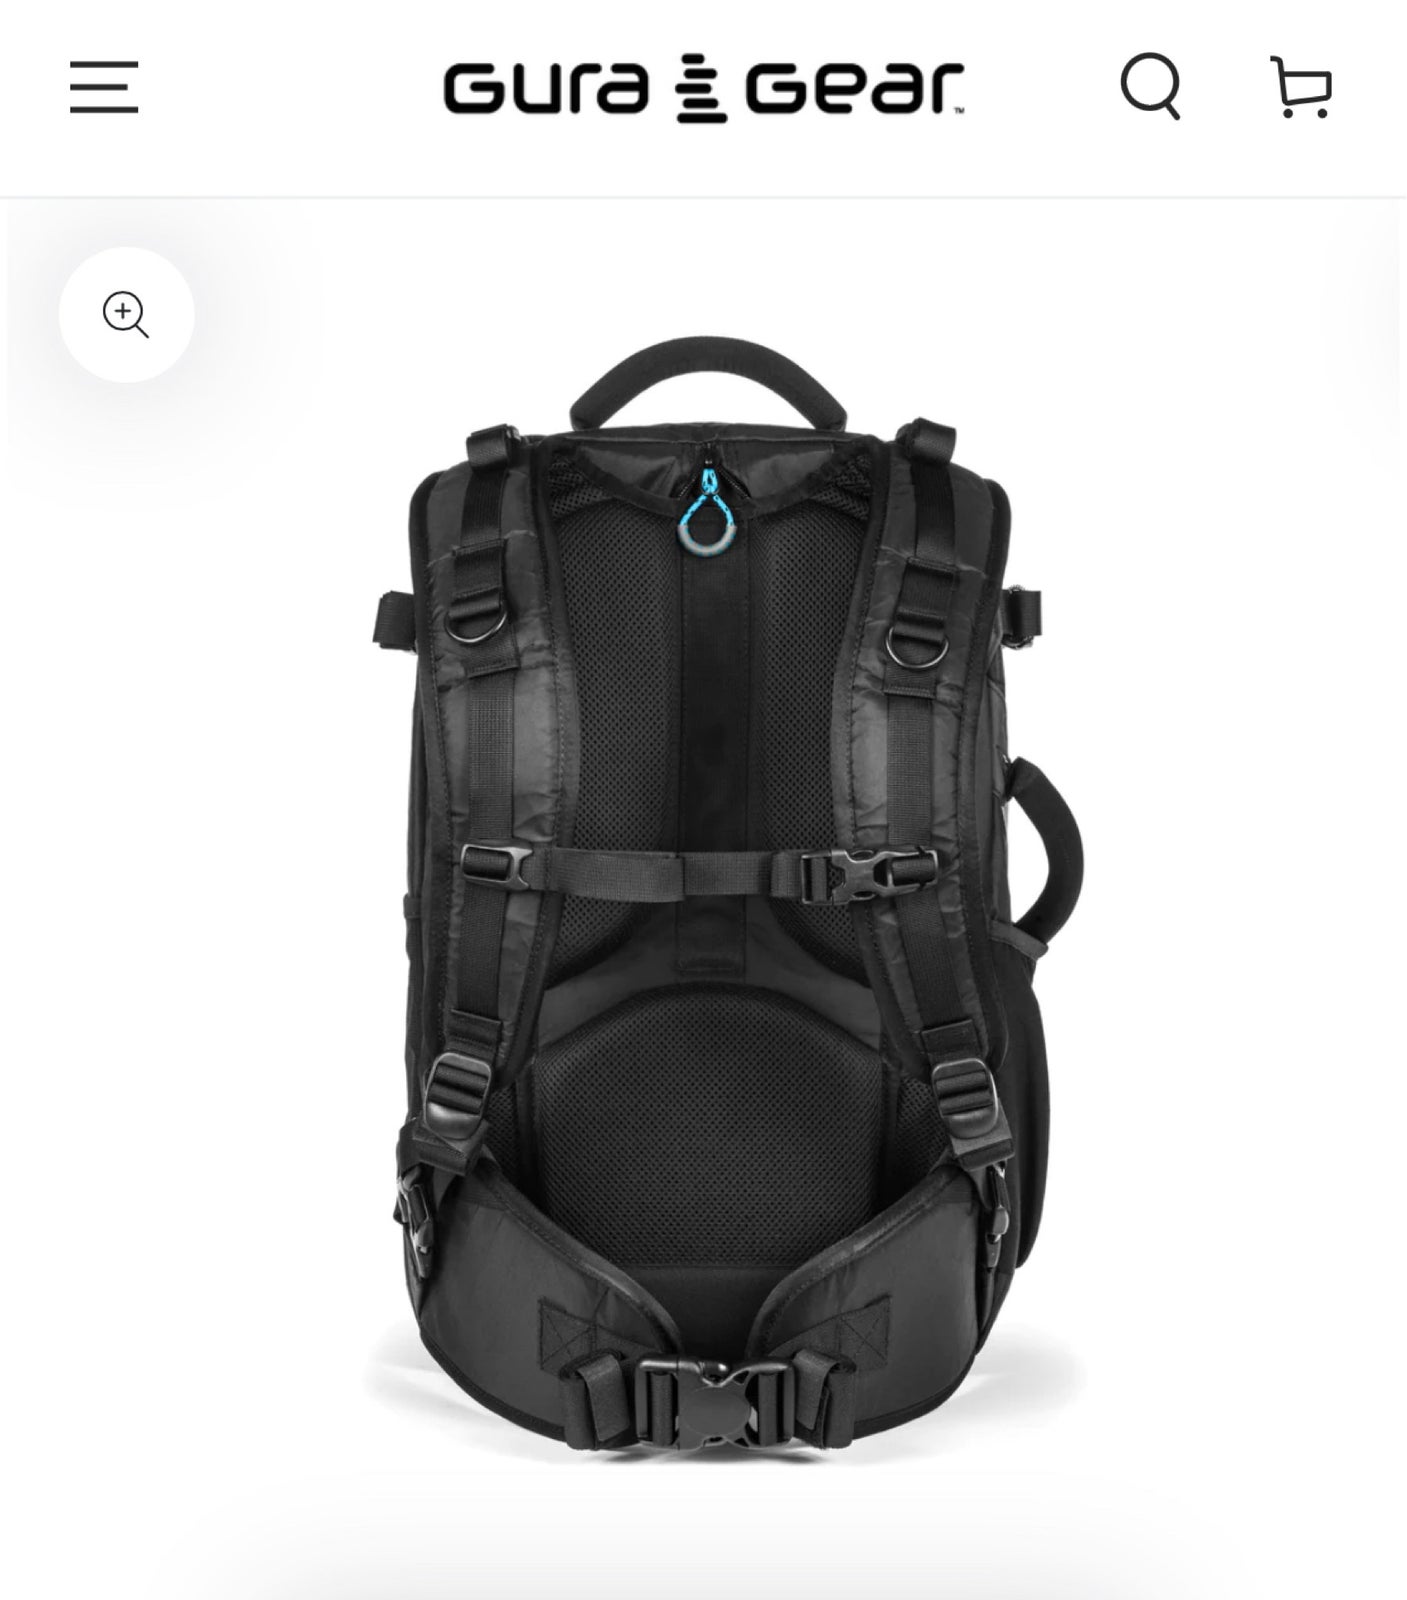 Foto backpack, Gura Gear, Kiboko 30 liter